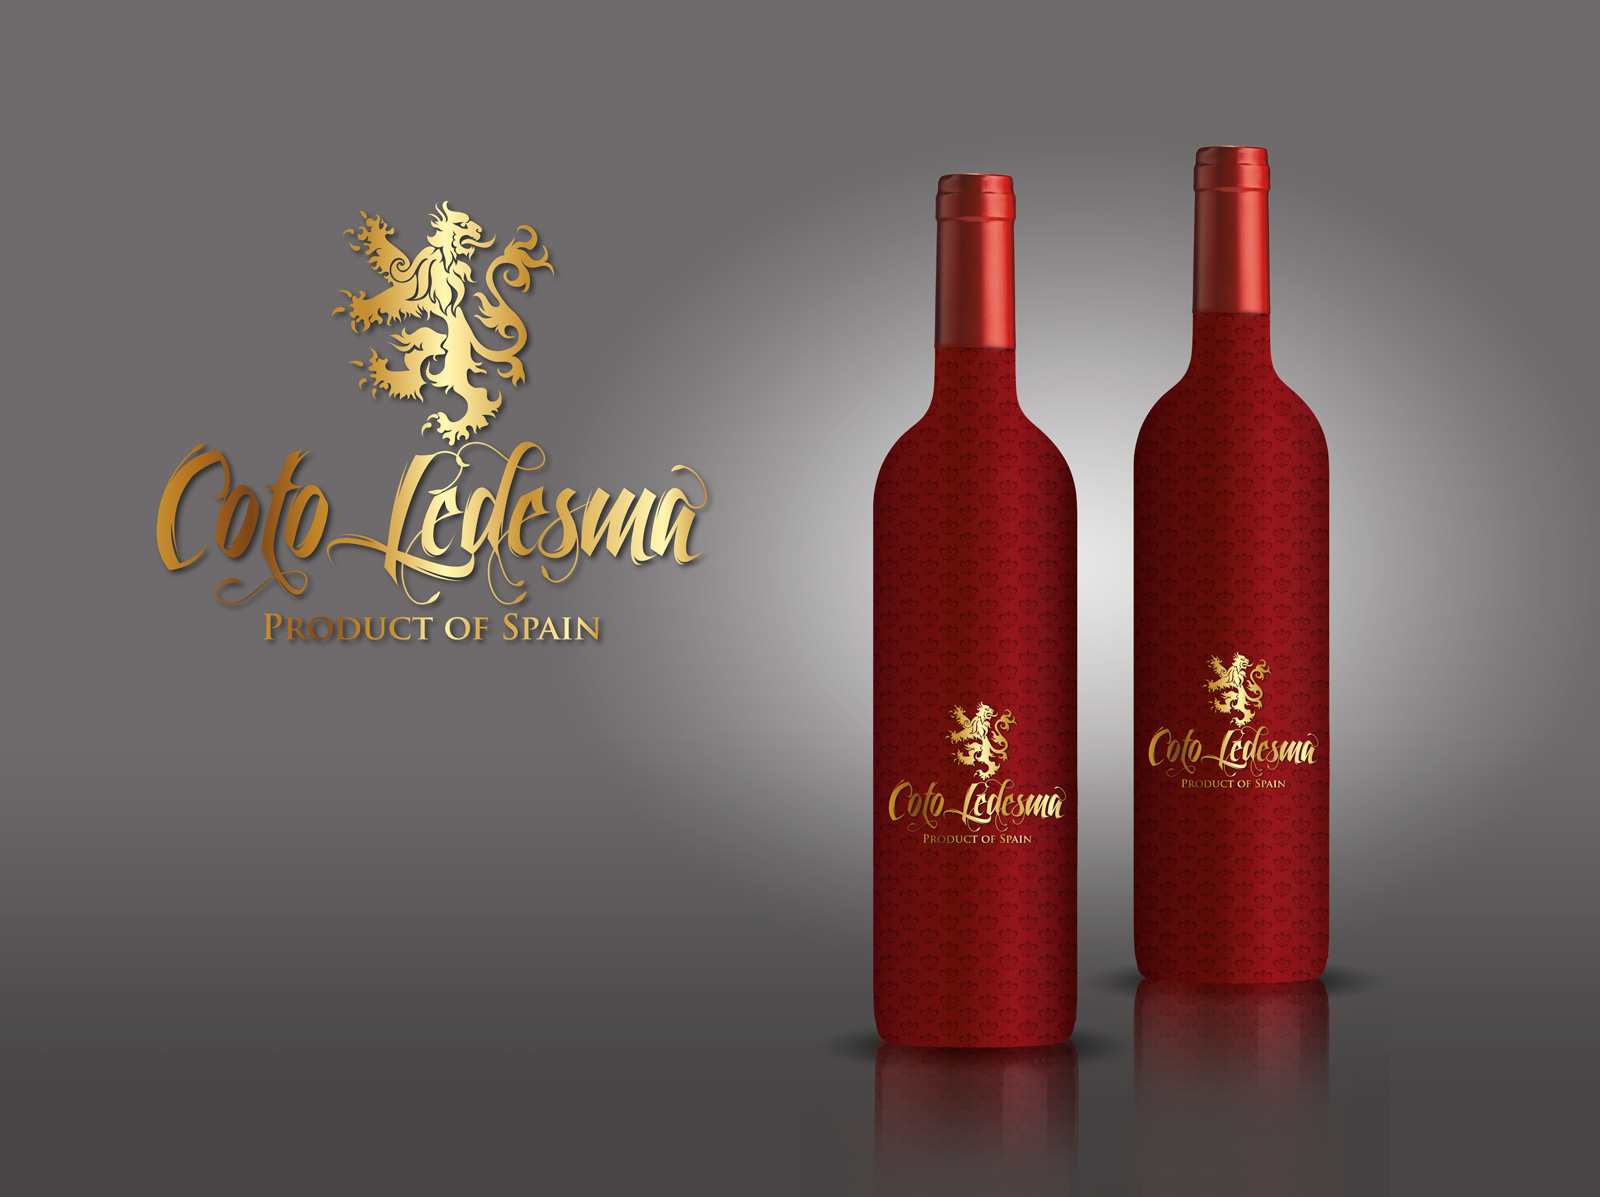 Diseño caja para marca de vino tinto COTO LEDESMA